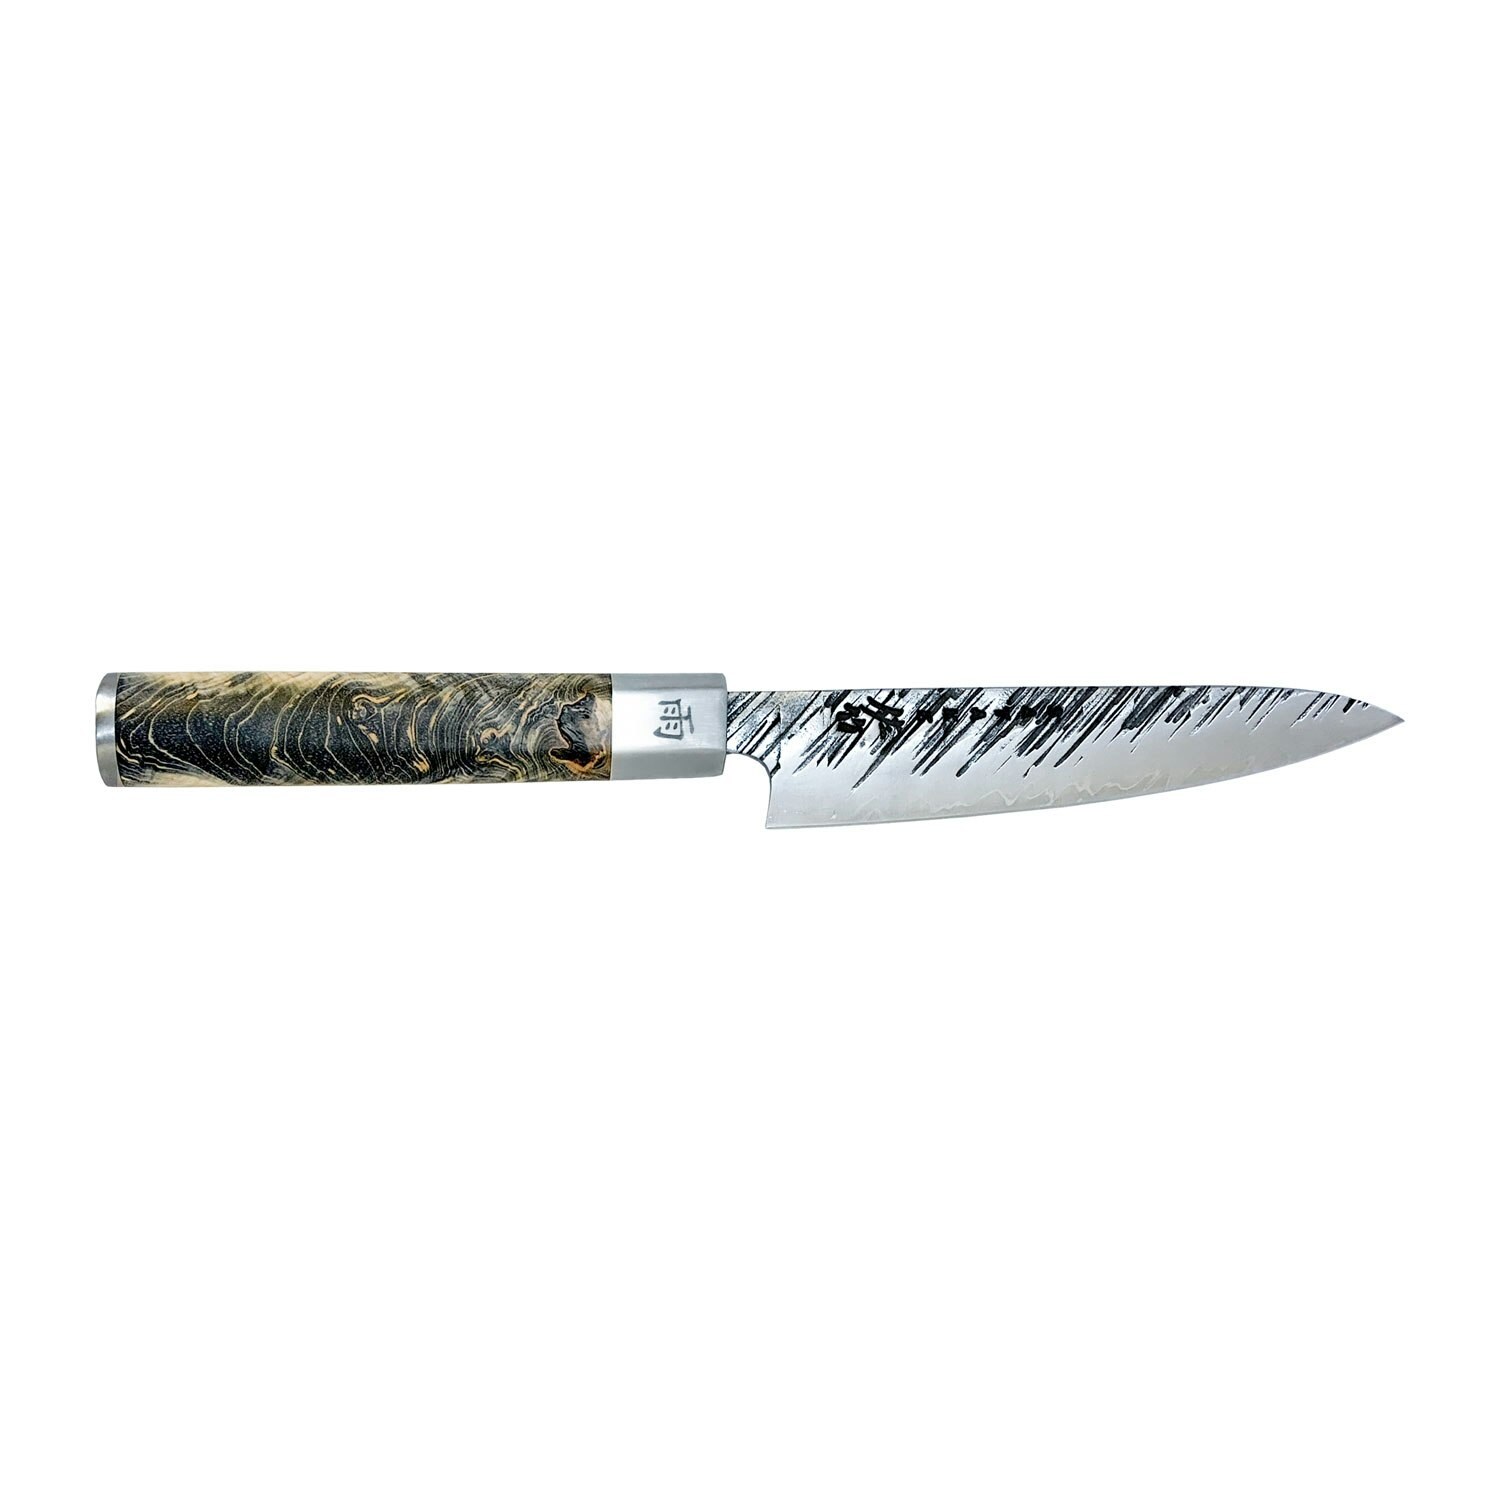 https://royaldesign.fi/image/5/satake-ame-petty-paring-knife-12-cm-0